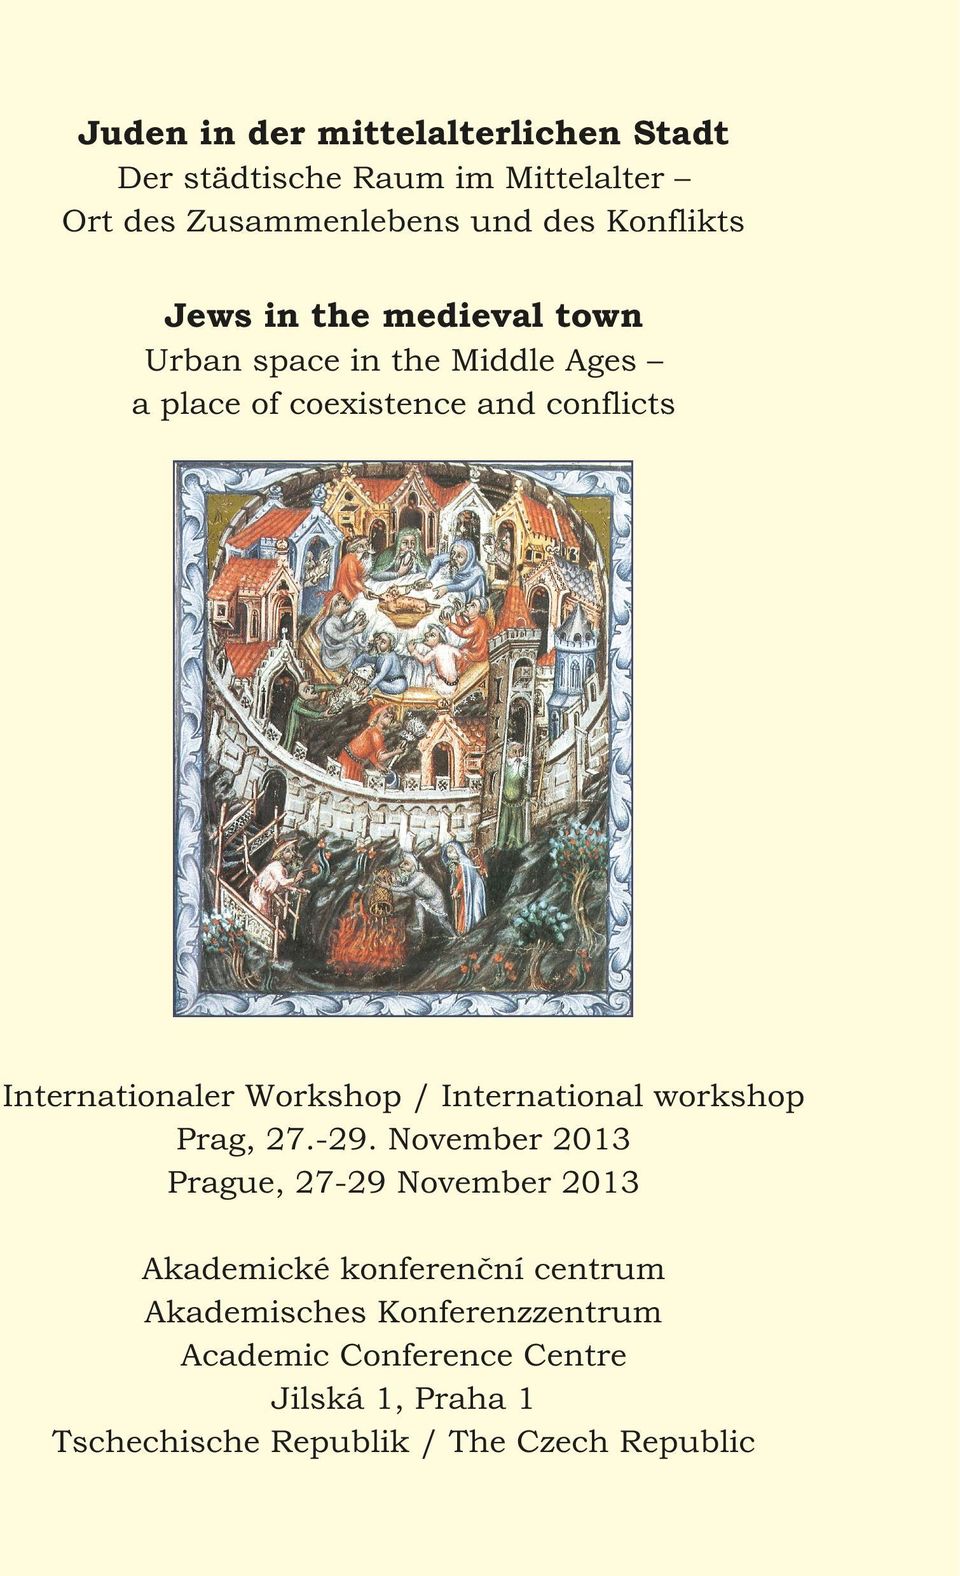 Workshop / International workshop Prag, 27.-29.